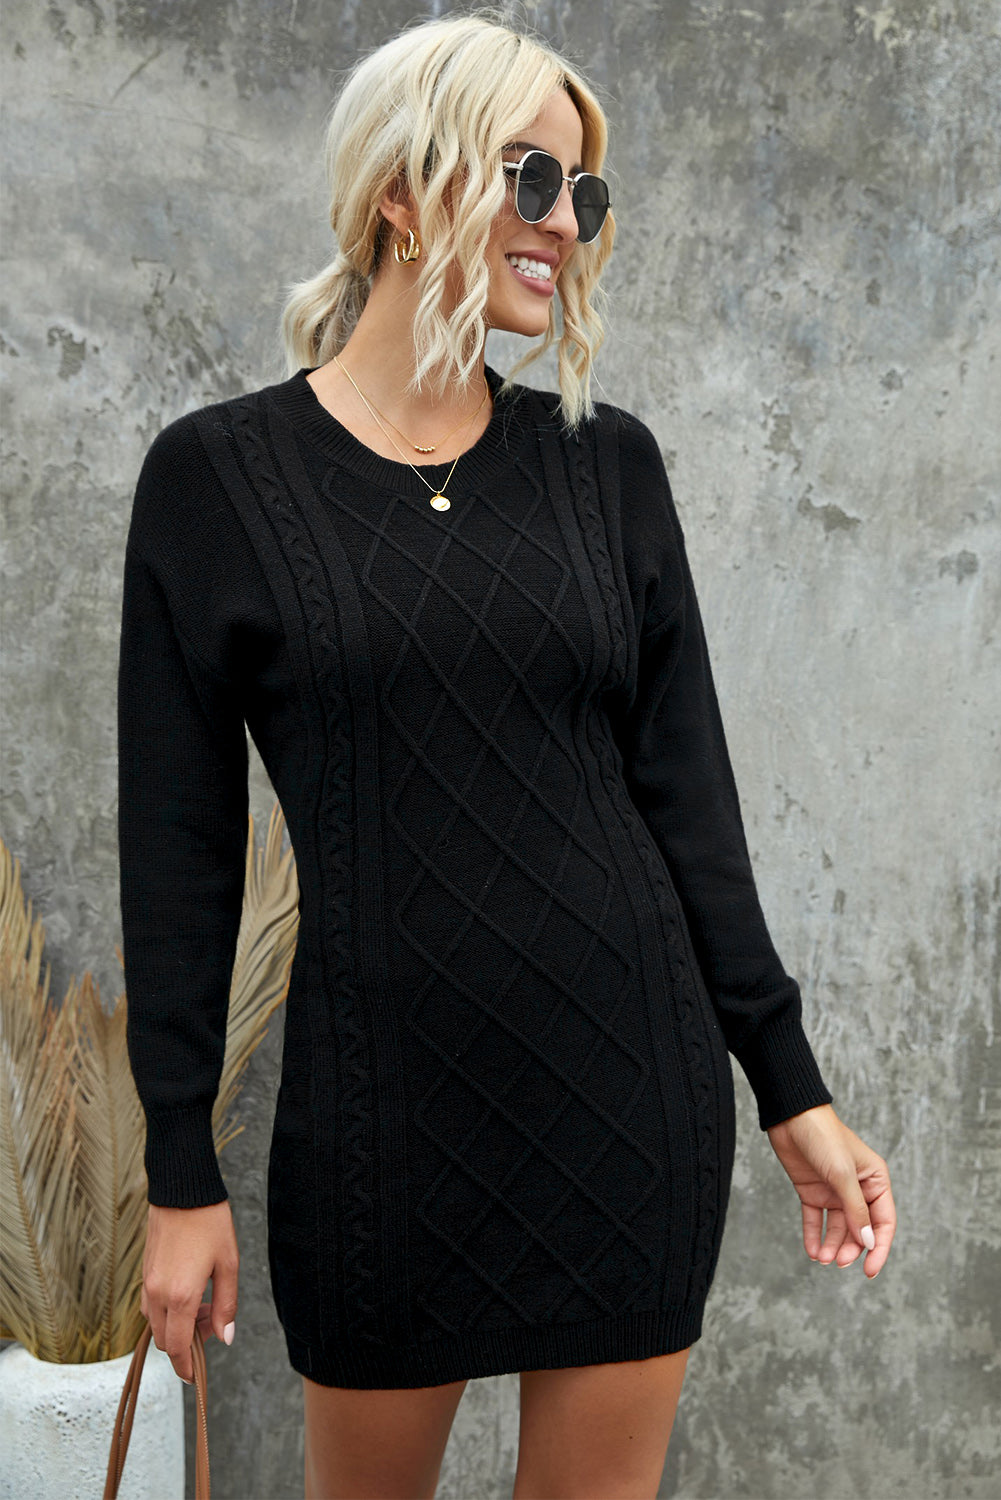 Robe Pull Noir Moulante Courte Femme Texture Geometrique